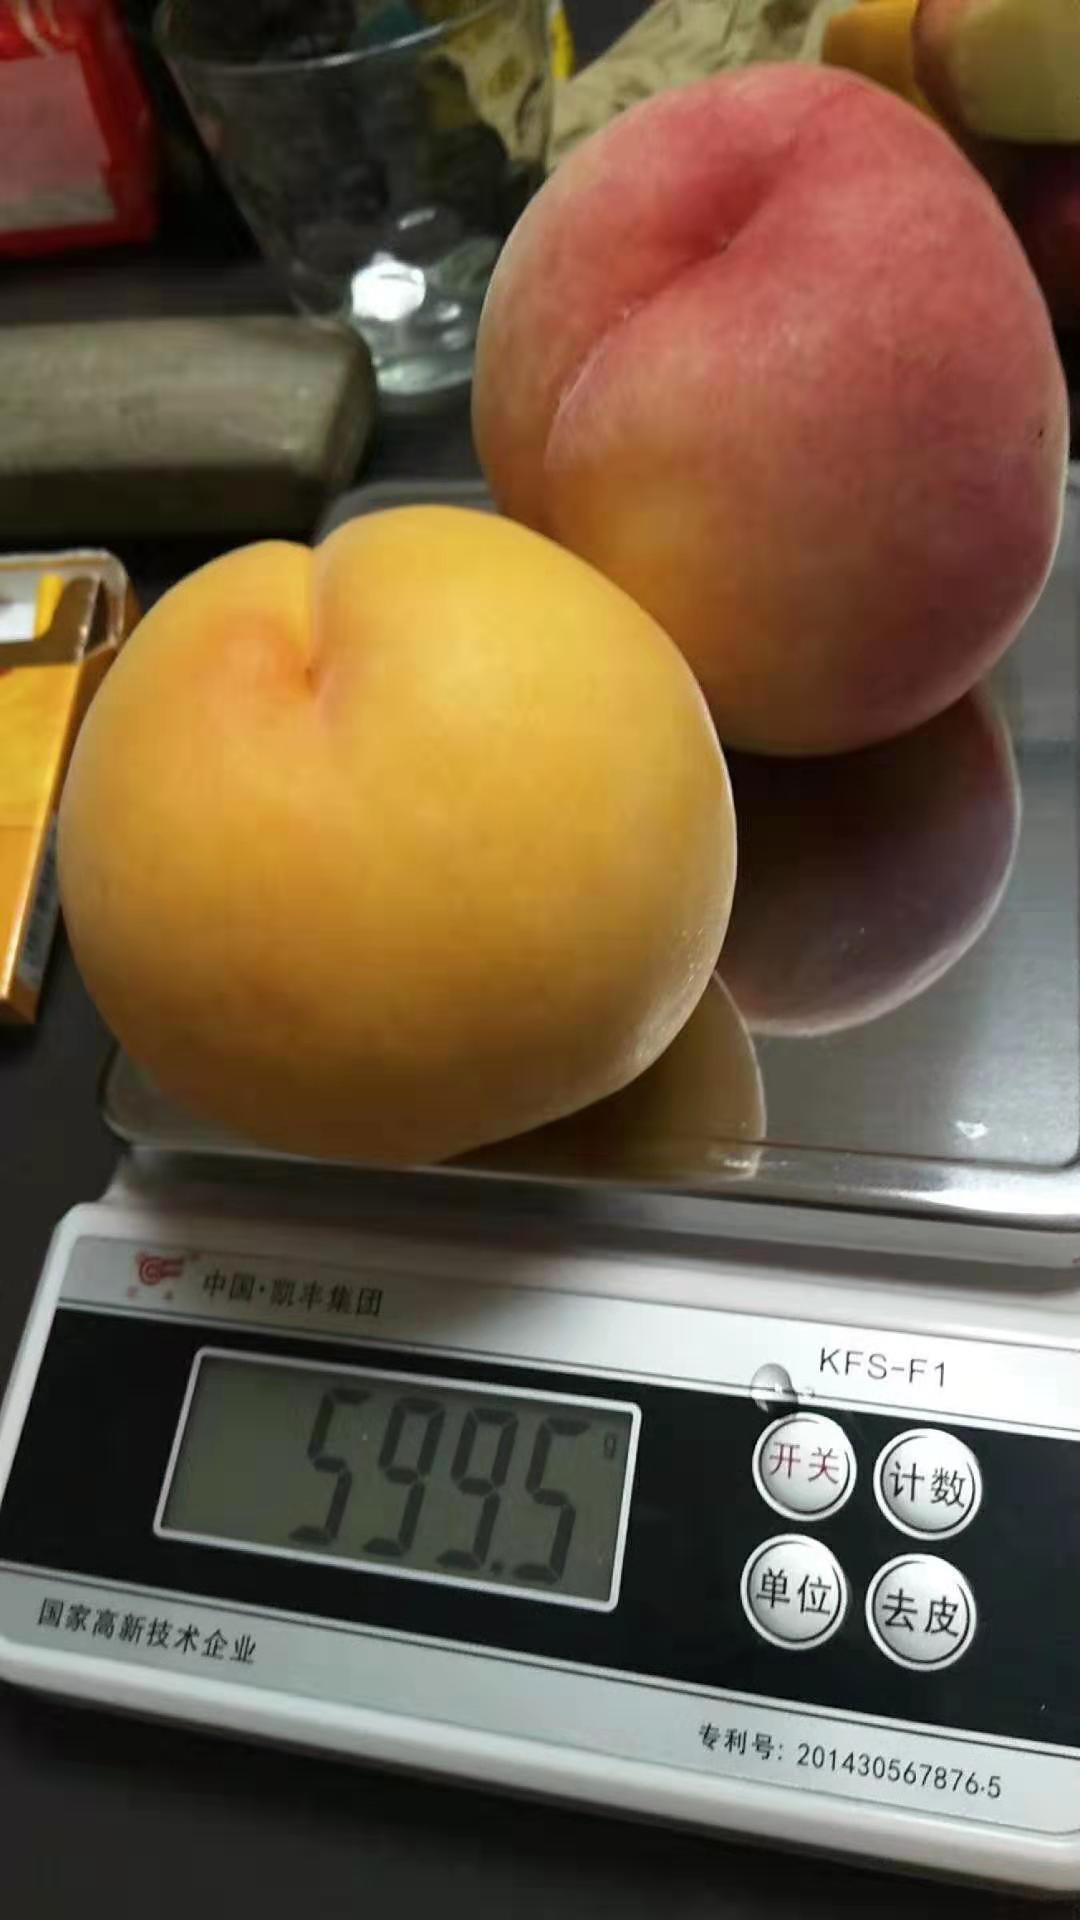 介绍两个新品种黄桃黄金蜜0号中桃金魁